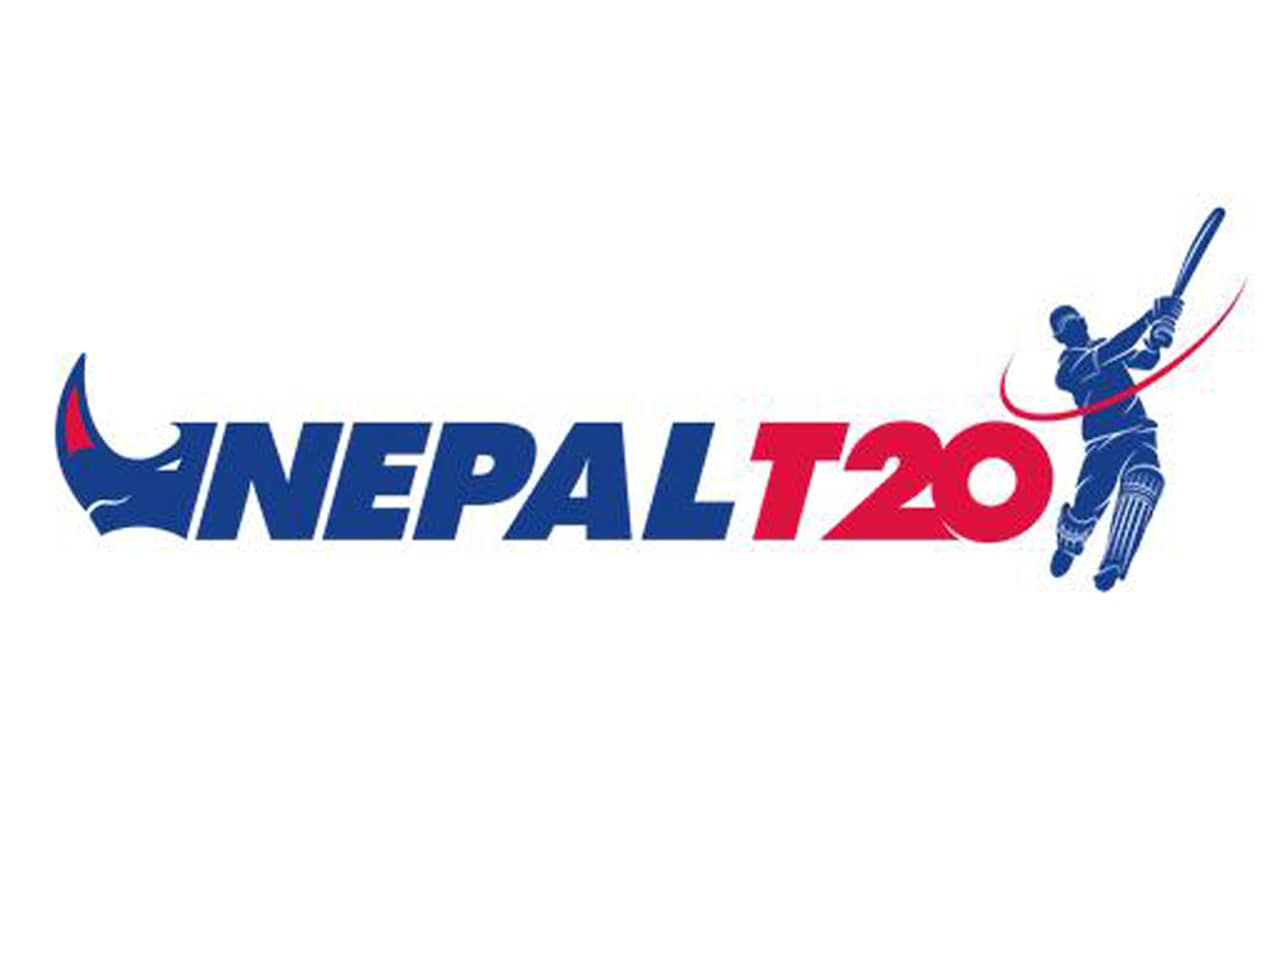 नेपाल टी-२० सुरु, काठमाडौँ नाइट्स र पोखरा एभेन्जर्सबीच प्रतिस्पर्धा हुँदै